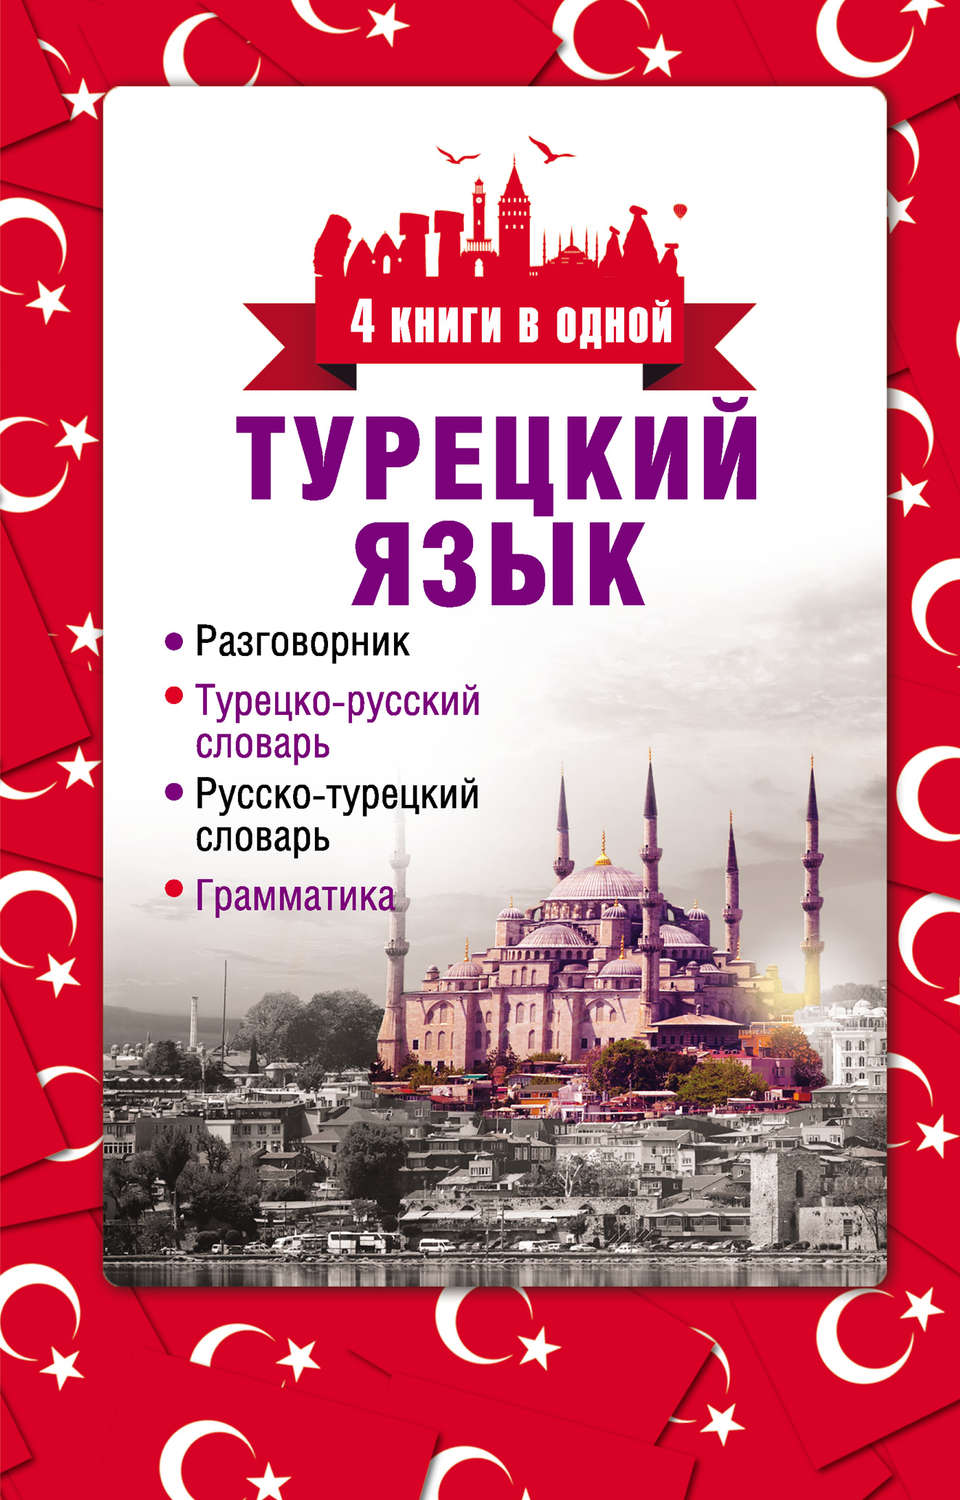 Скачать бесплатно книги на турецком языке